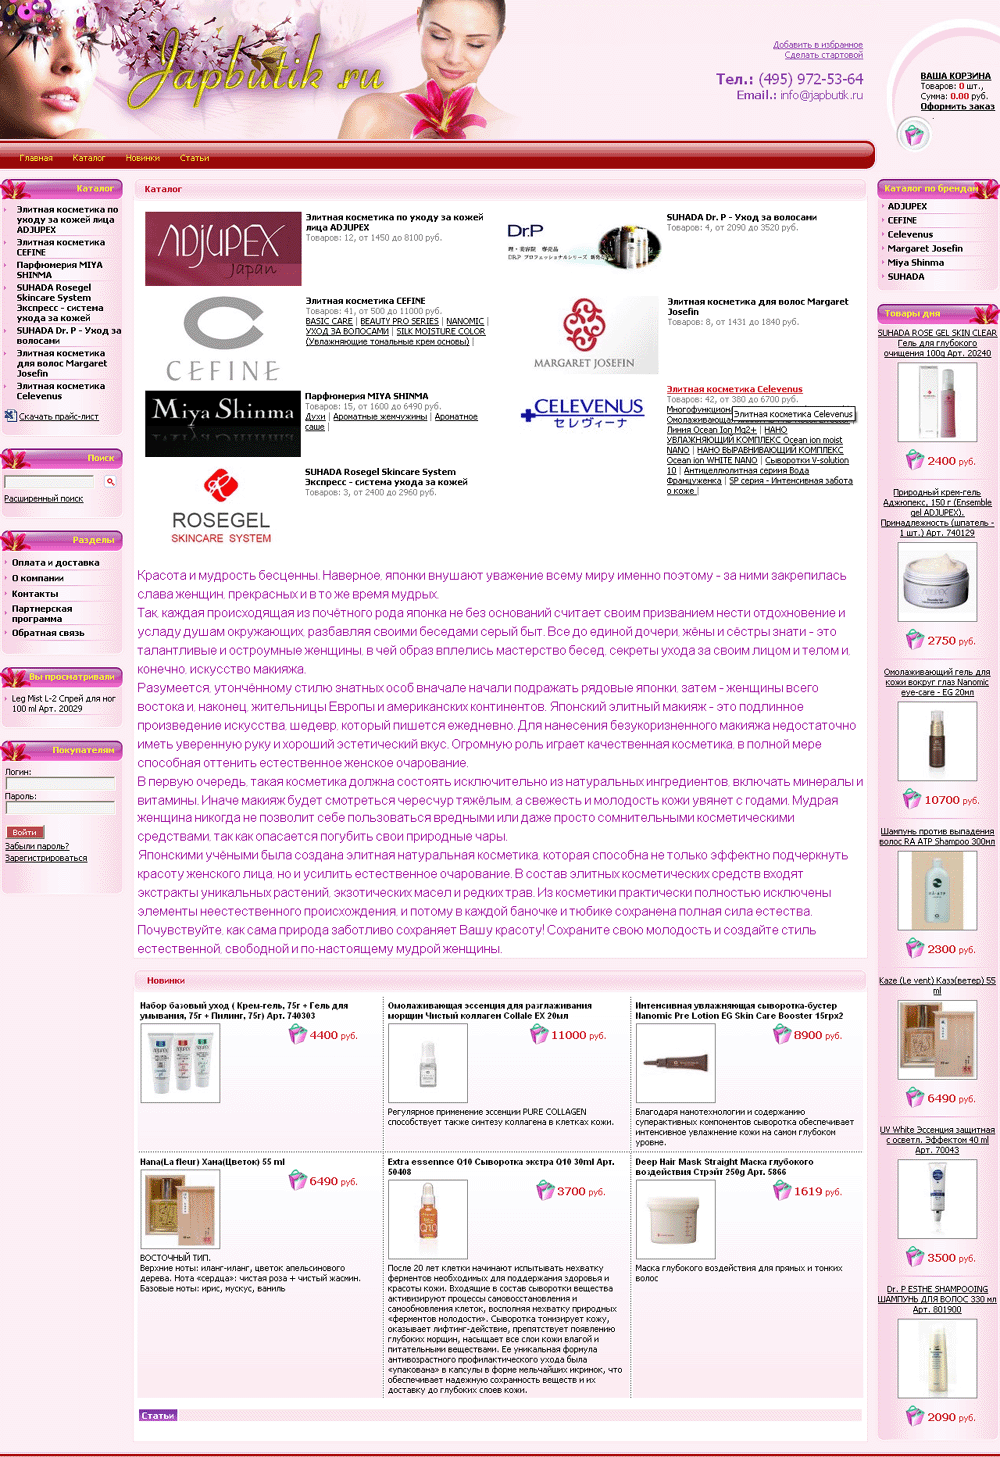 Cозданый интернет-магазин женской косметики по уходу за кожей